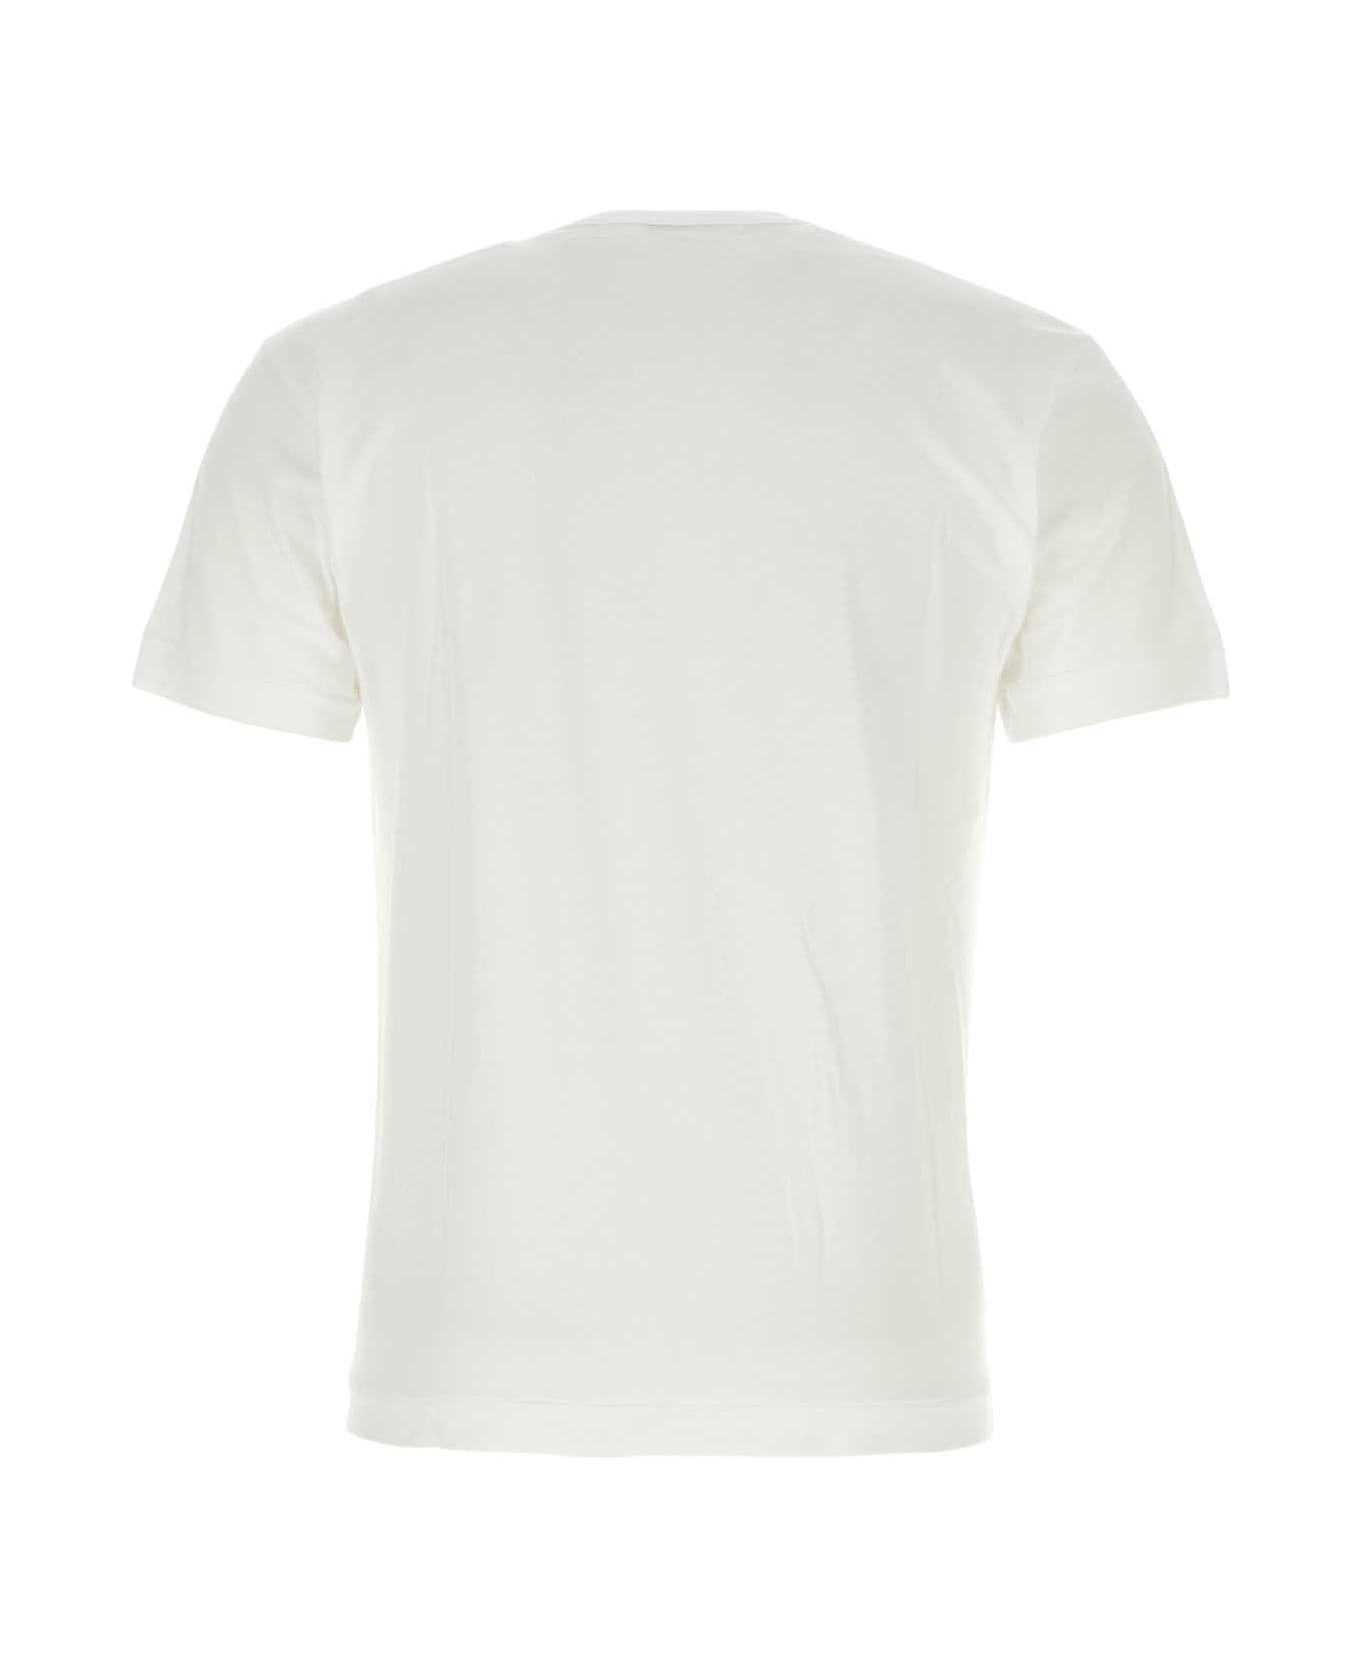 Comme des Garçons Play White Cotton T-shirt - BLUE シャツ